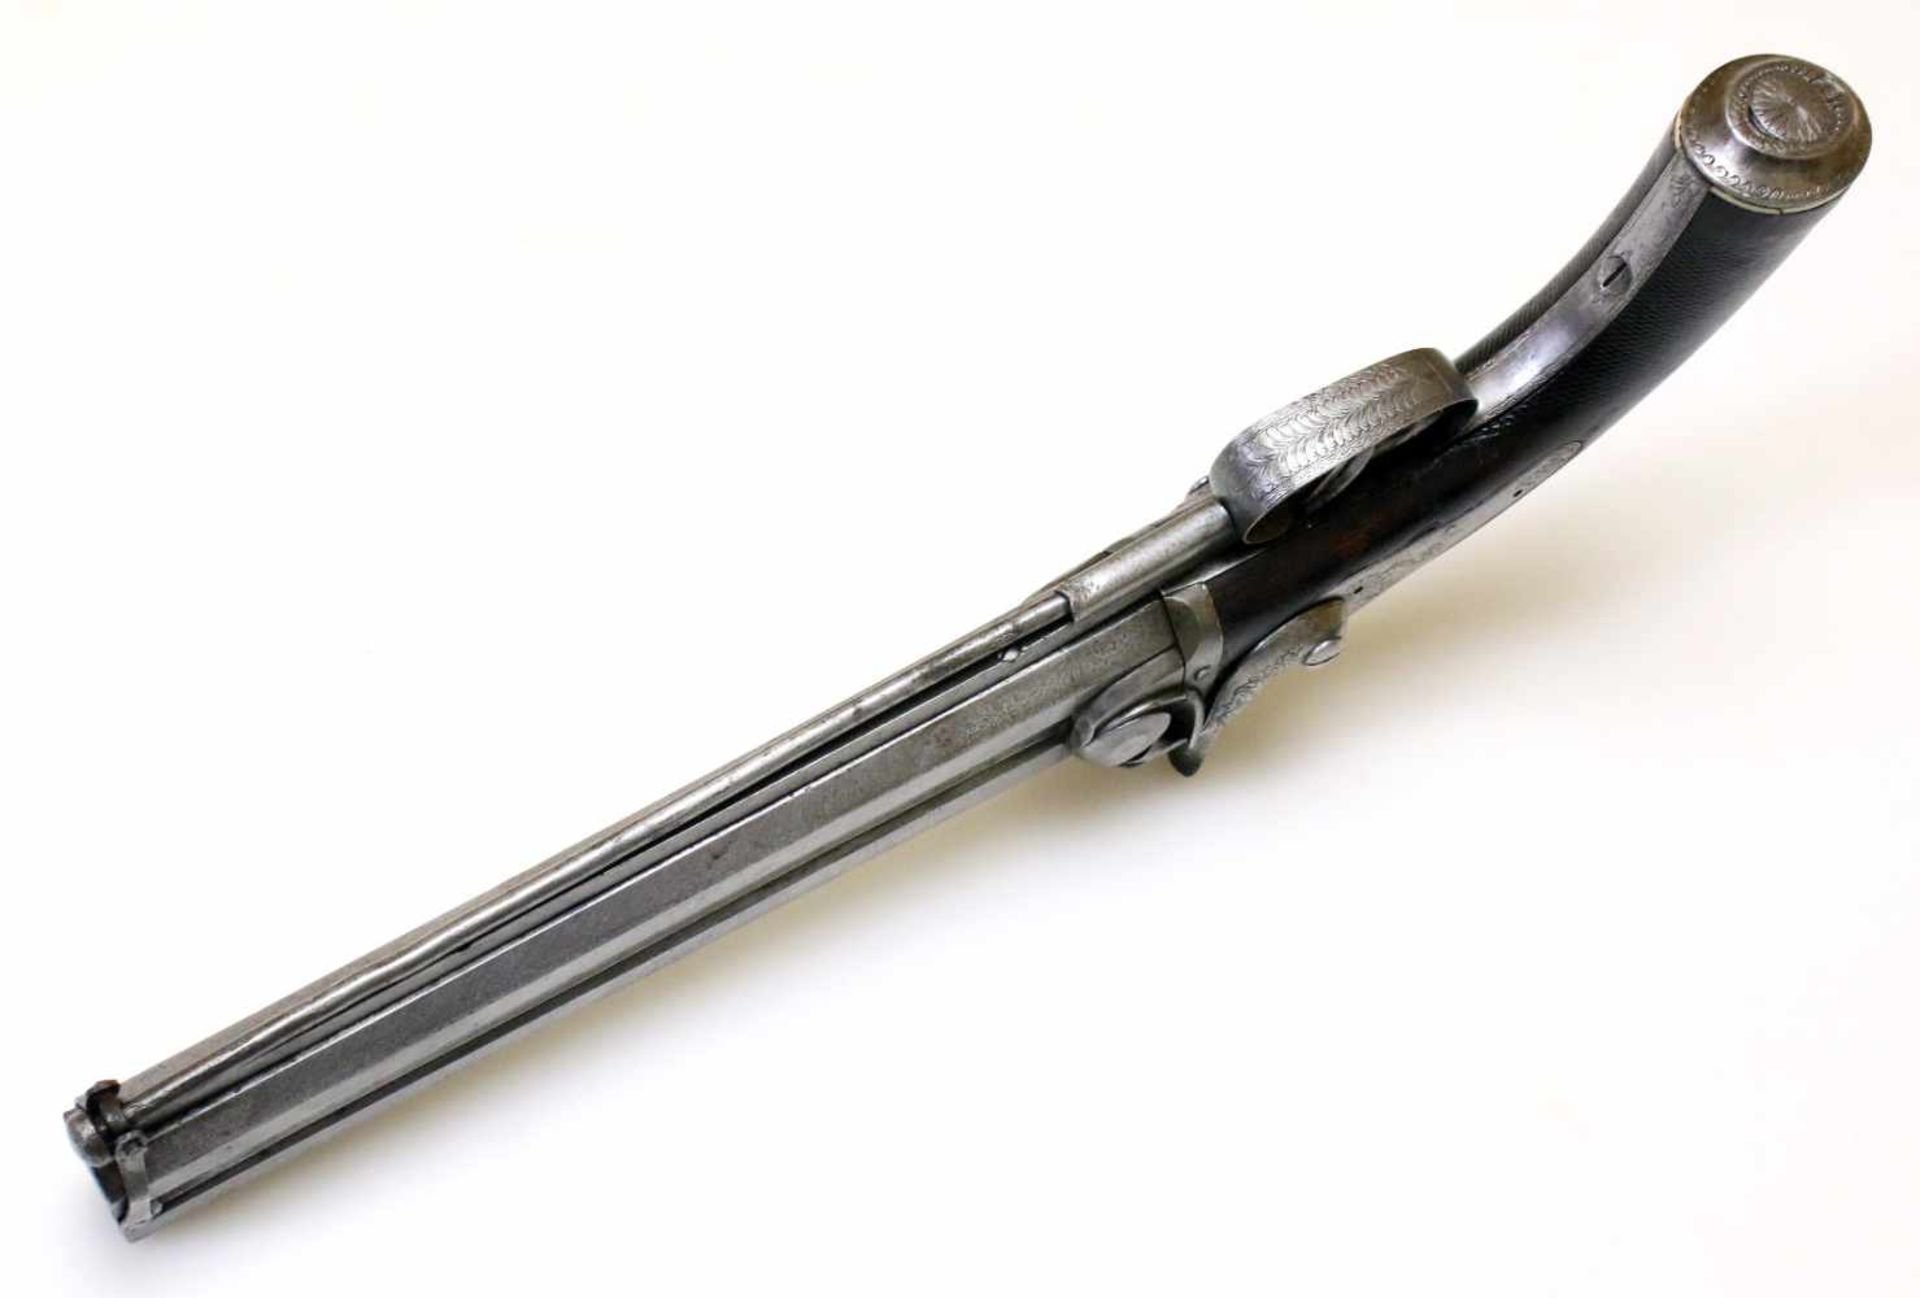 Doppelläufige Perkussionspistole - England um 1850 Cal. 14mm Perk., Zustand 2. Zwei übereinander - Bild 9 aus 15